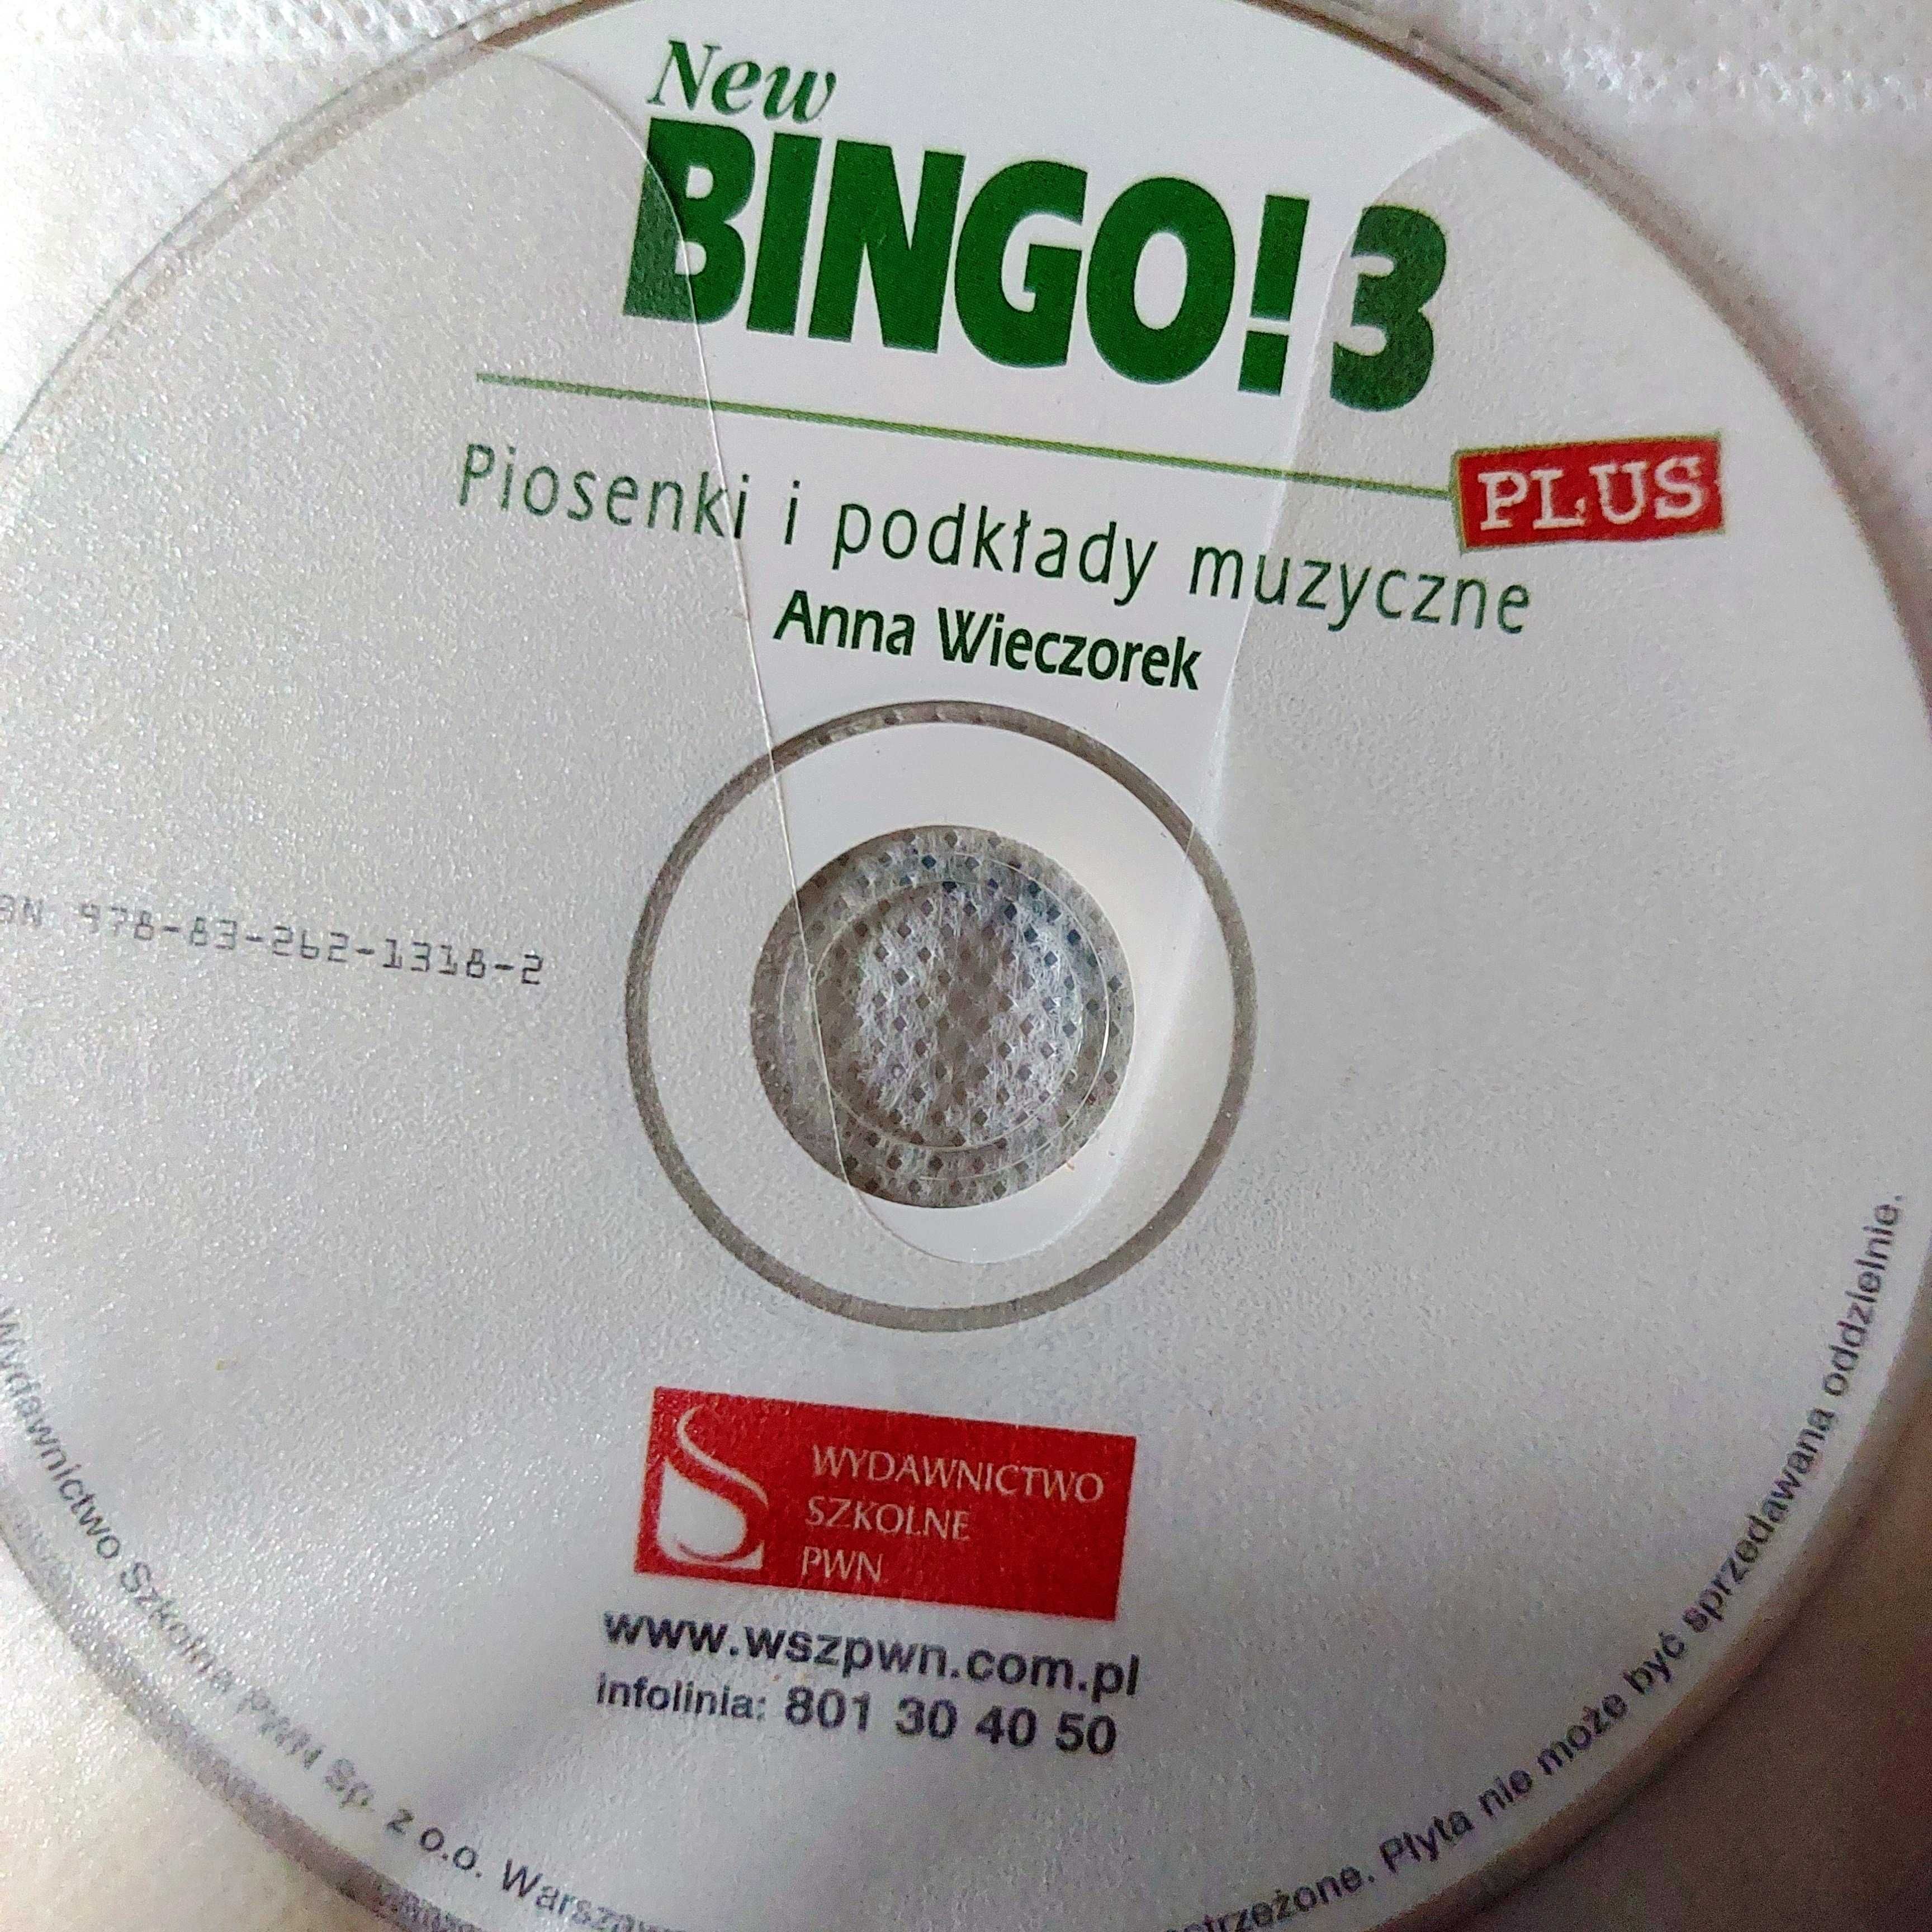 NEW BINGO 3 - Piosenki i podkłady muzyczne - Anna Wieczorek | CD